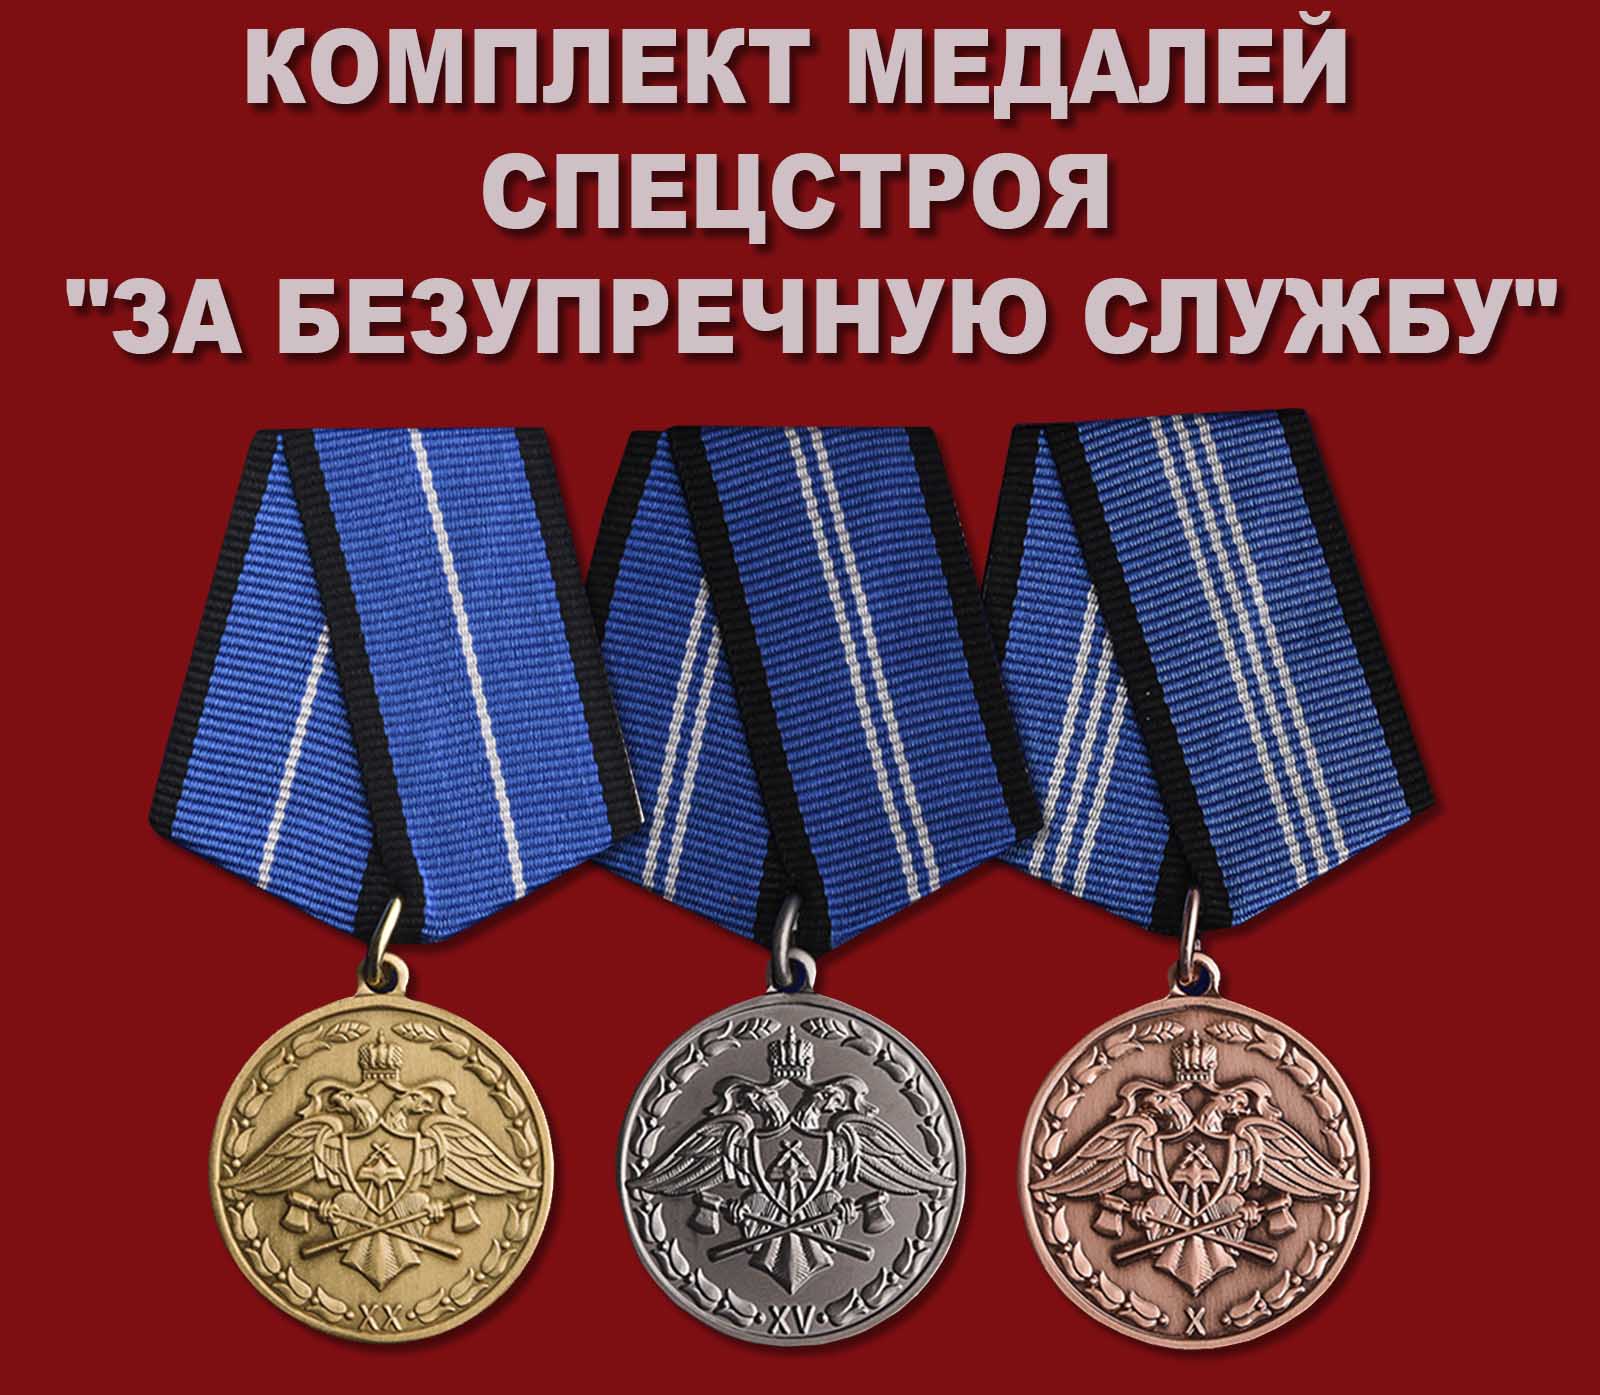 Купить комплект медалей Спецстроя "За безупречную службу"